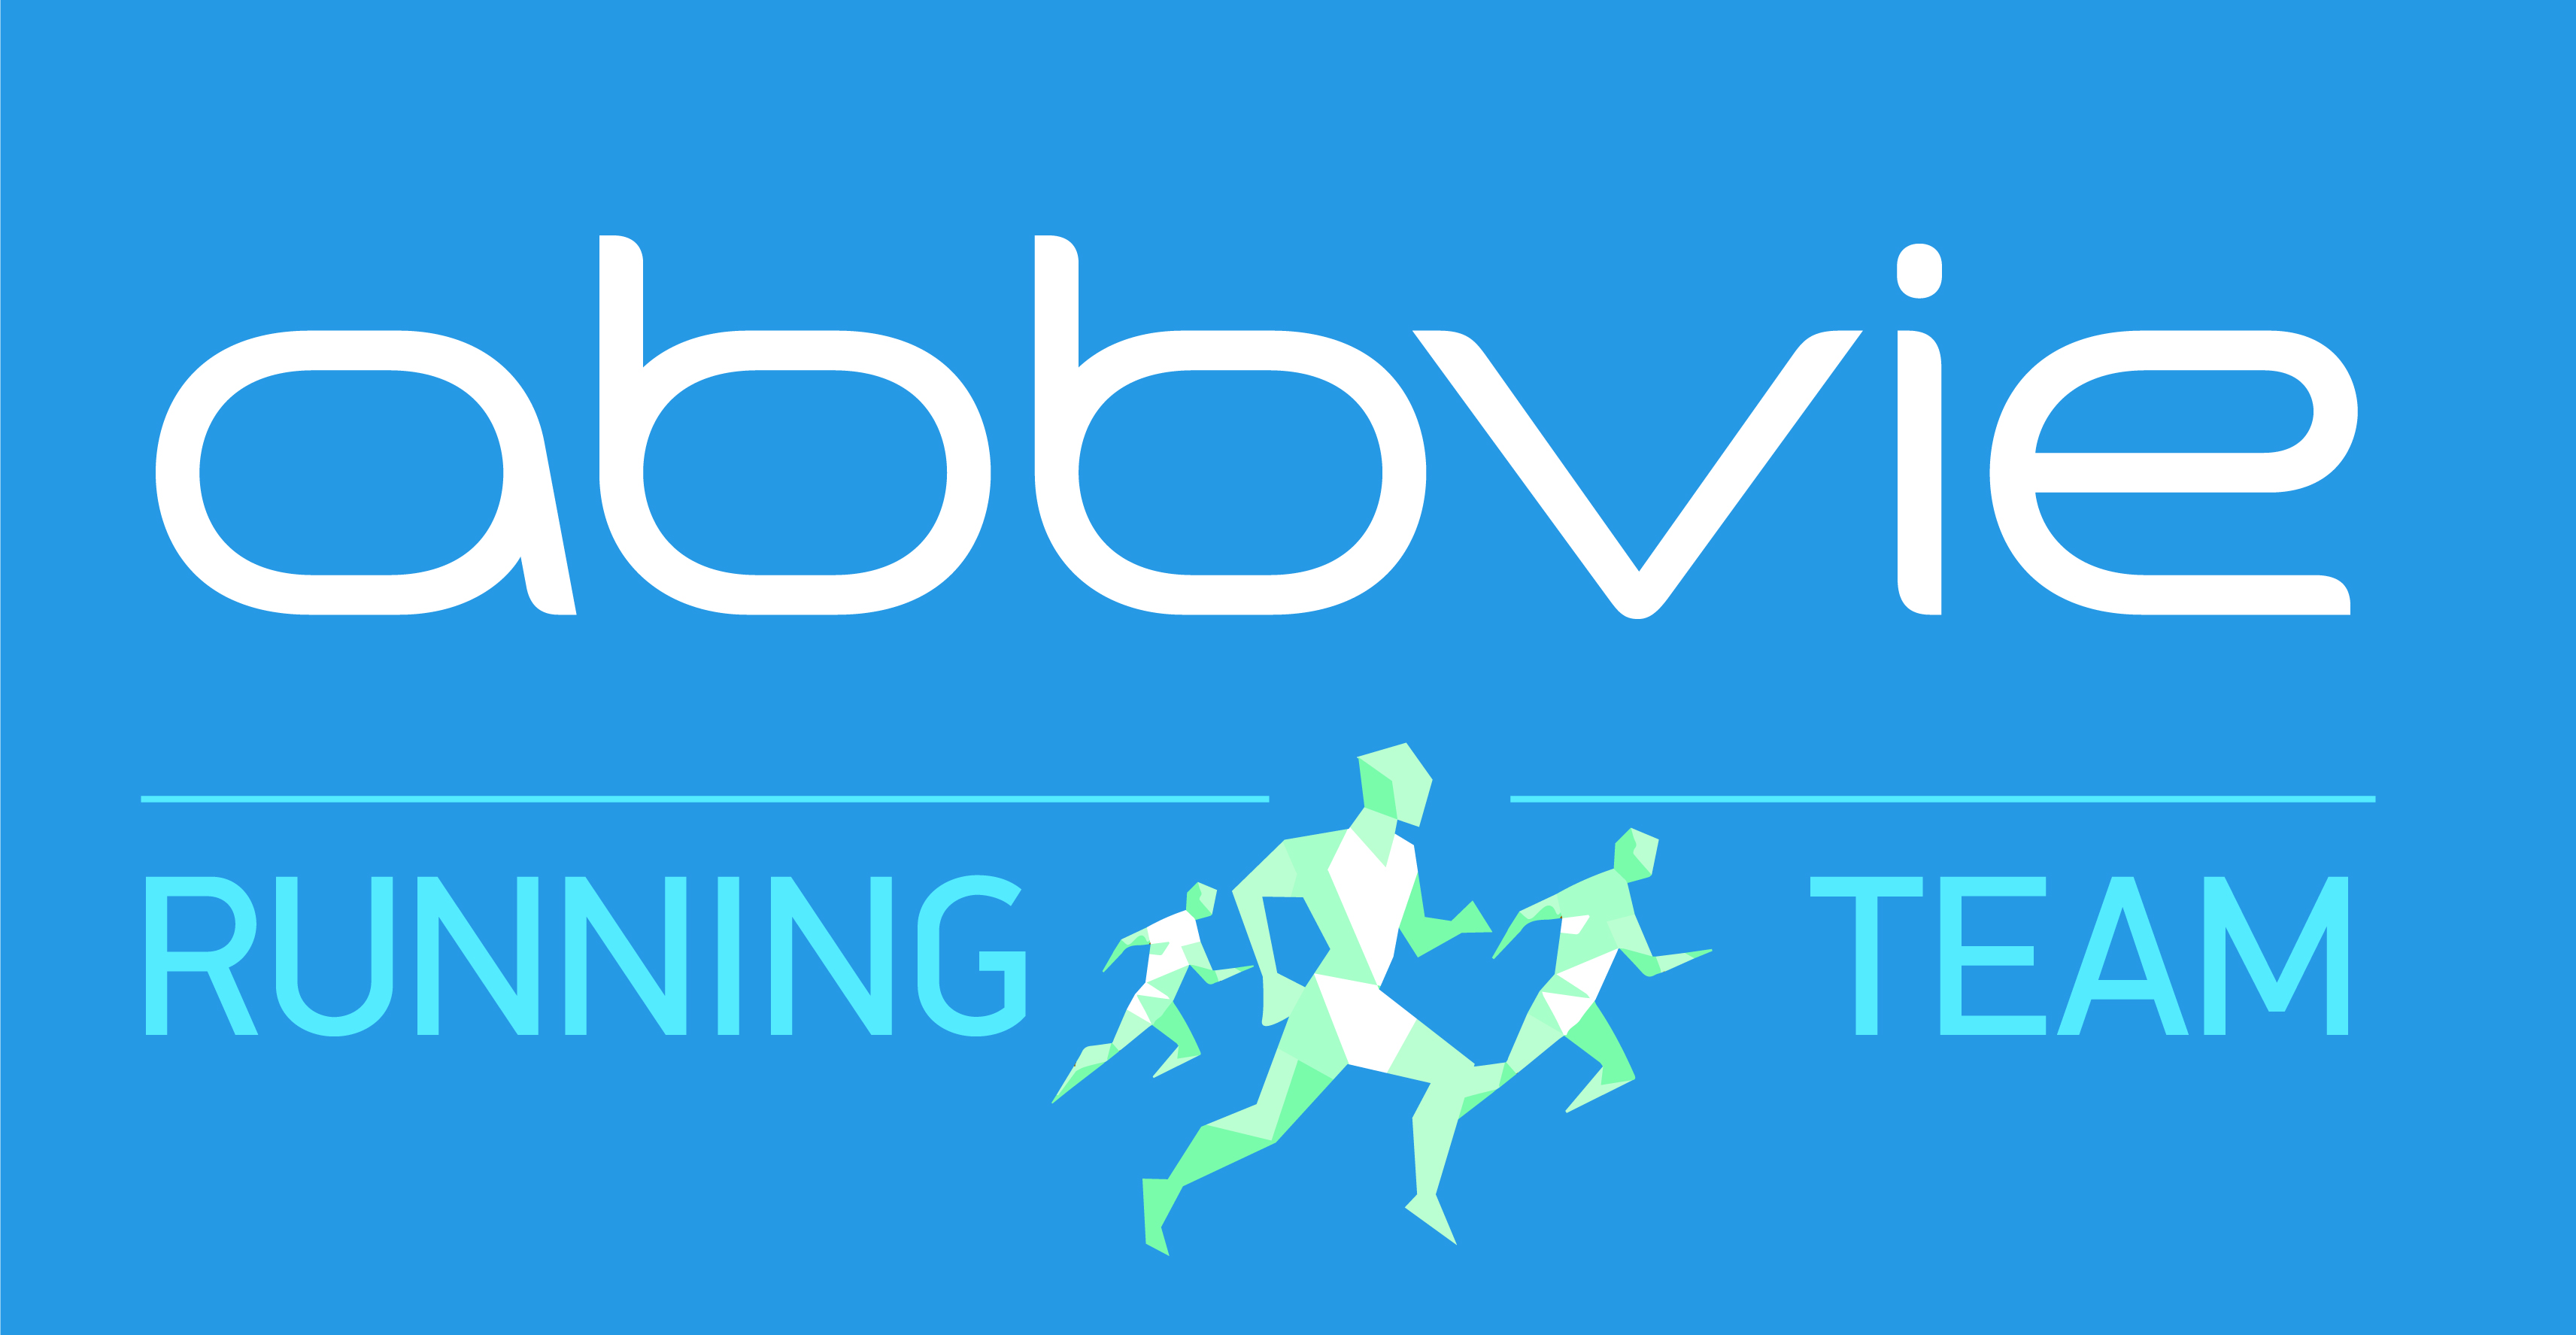 Η AbbVie Running Team έτρεξε για την Ομάδα Αιγαίου στον Ημιμαραθώνιο της Αθήνας